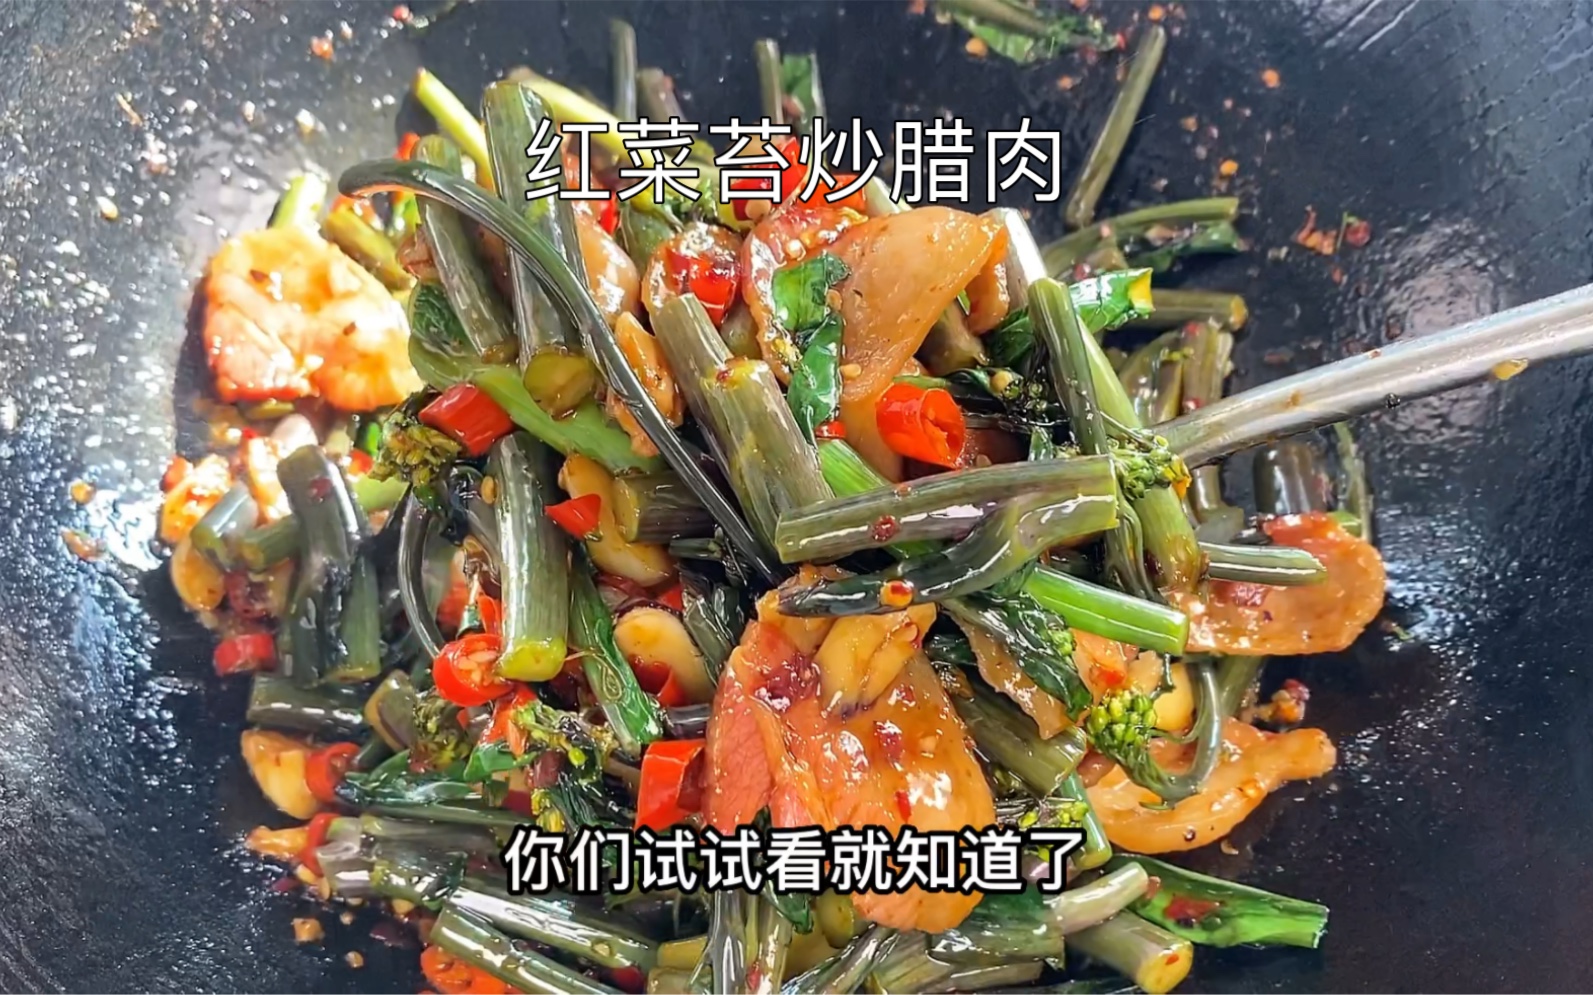 红菜苔最具特色的做法，麻辣鲜香别具一格，不得不佩服高手在民间 - 哔哩哔哩